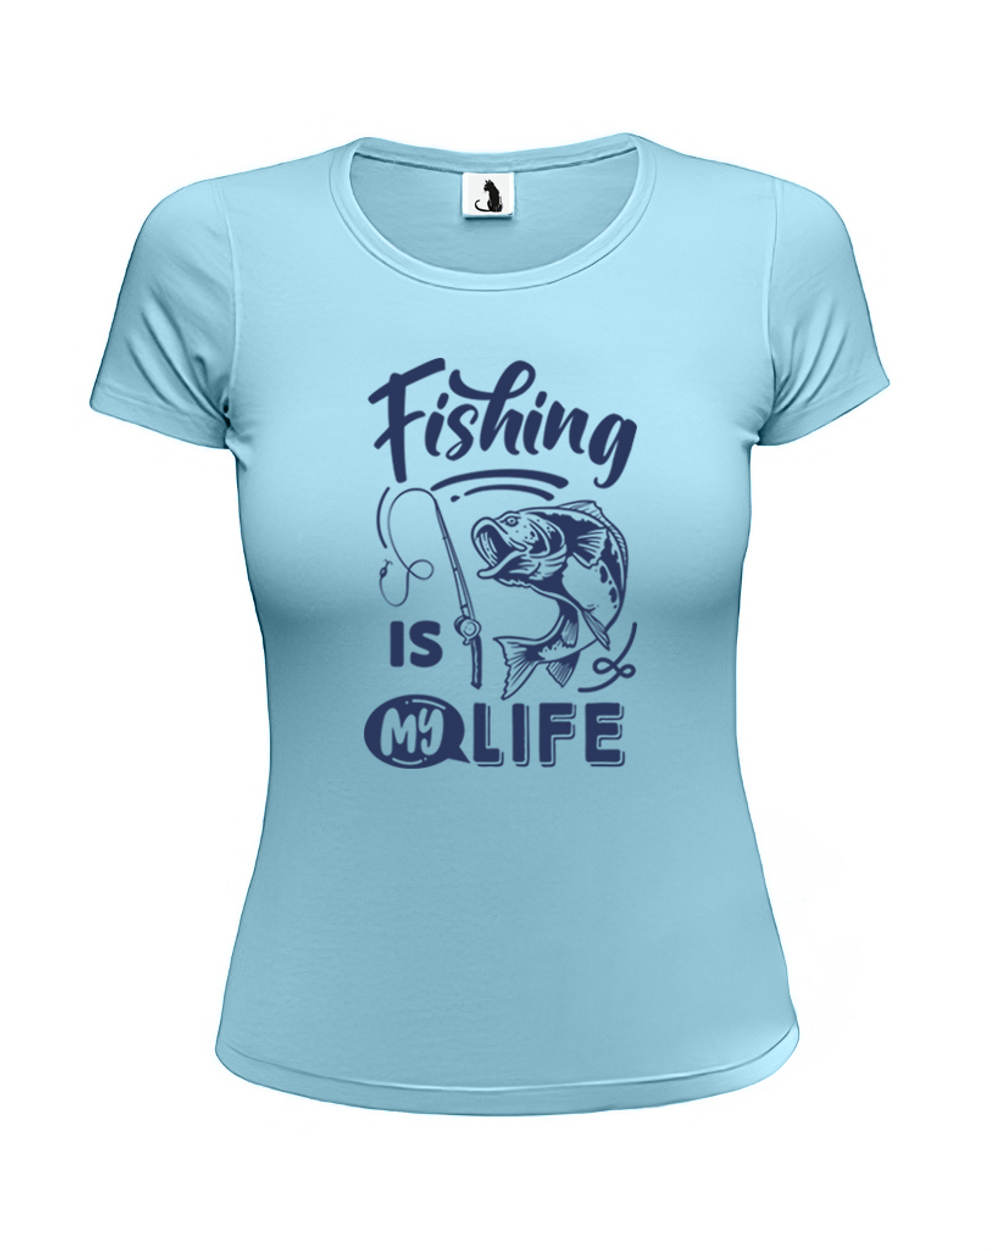 Футболка рыбака Fishing is my life женская приталенная голубая с синим рисунком